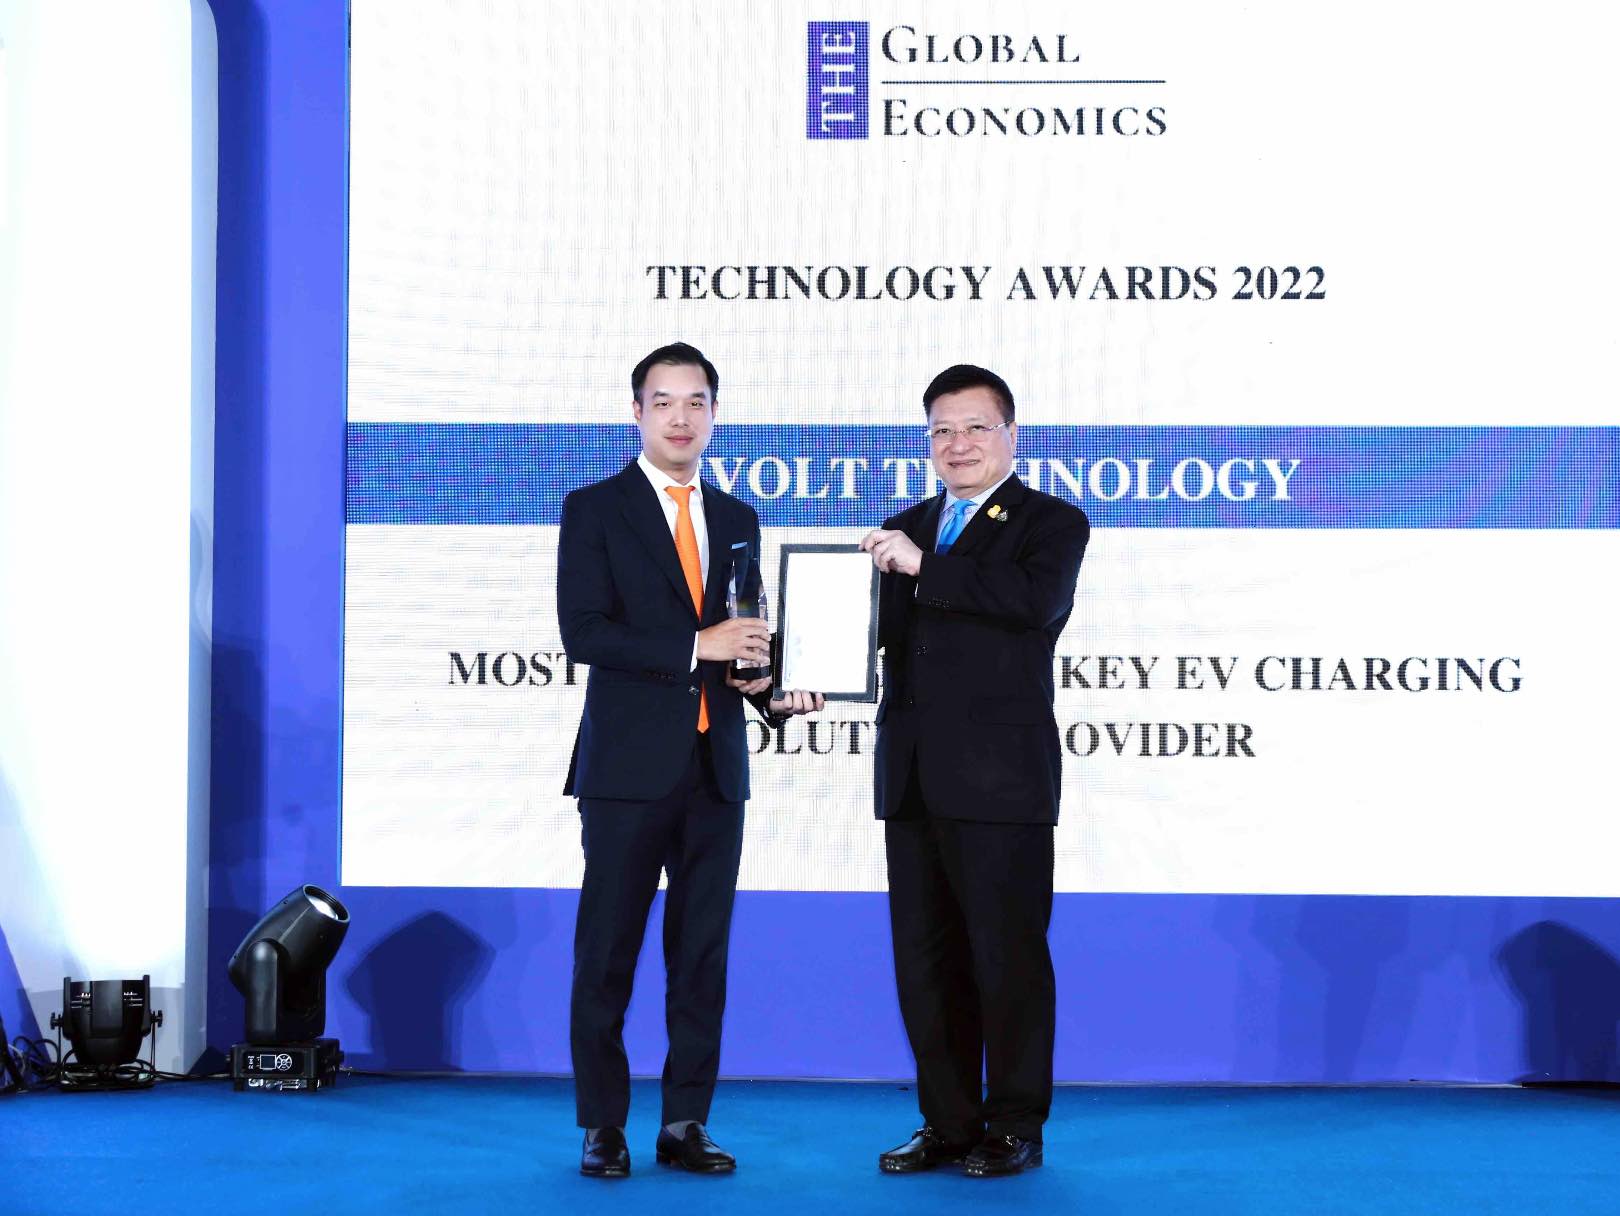 ข่าวไอที - Evolt Technology คว้ารางวัลใหญ่ จาก The Global Economic Awards 2022 ตอกย้ำความเป็นผู้นำ ผู้ให้บริการสถานีชาร์จ แบบครบวงจร